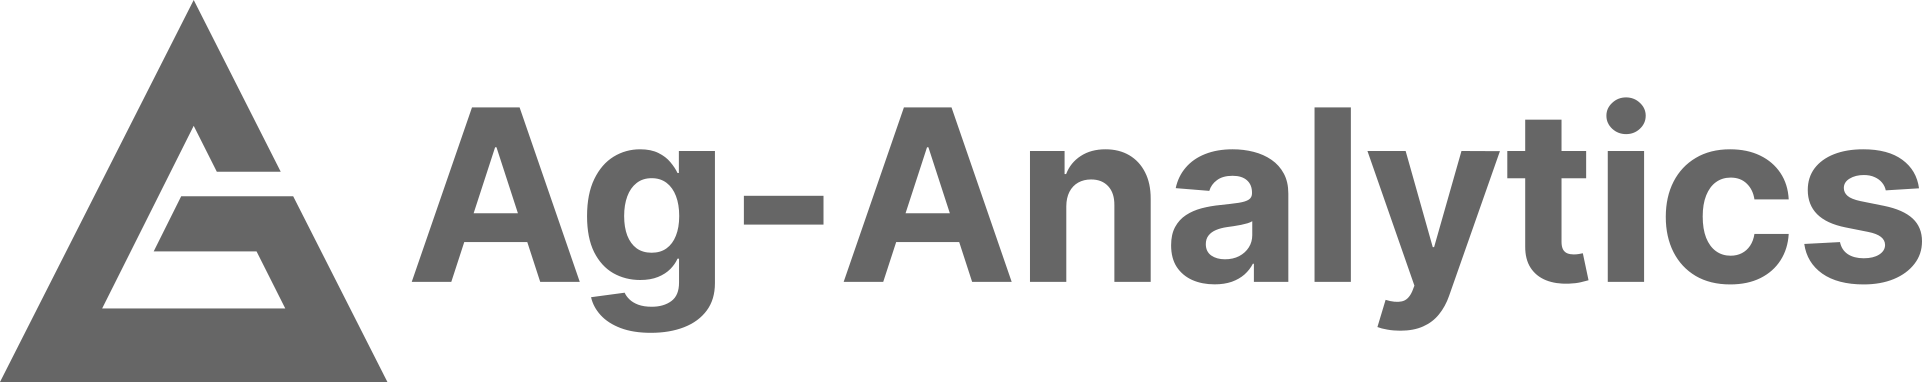 ag-analytics-logo